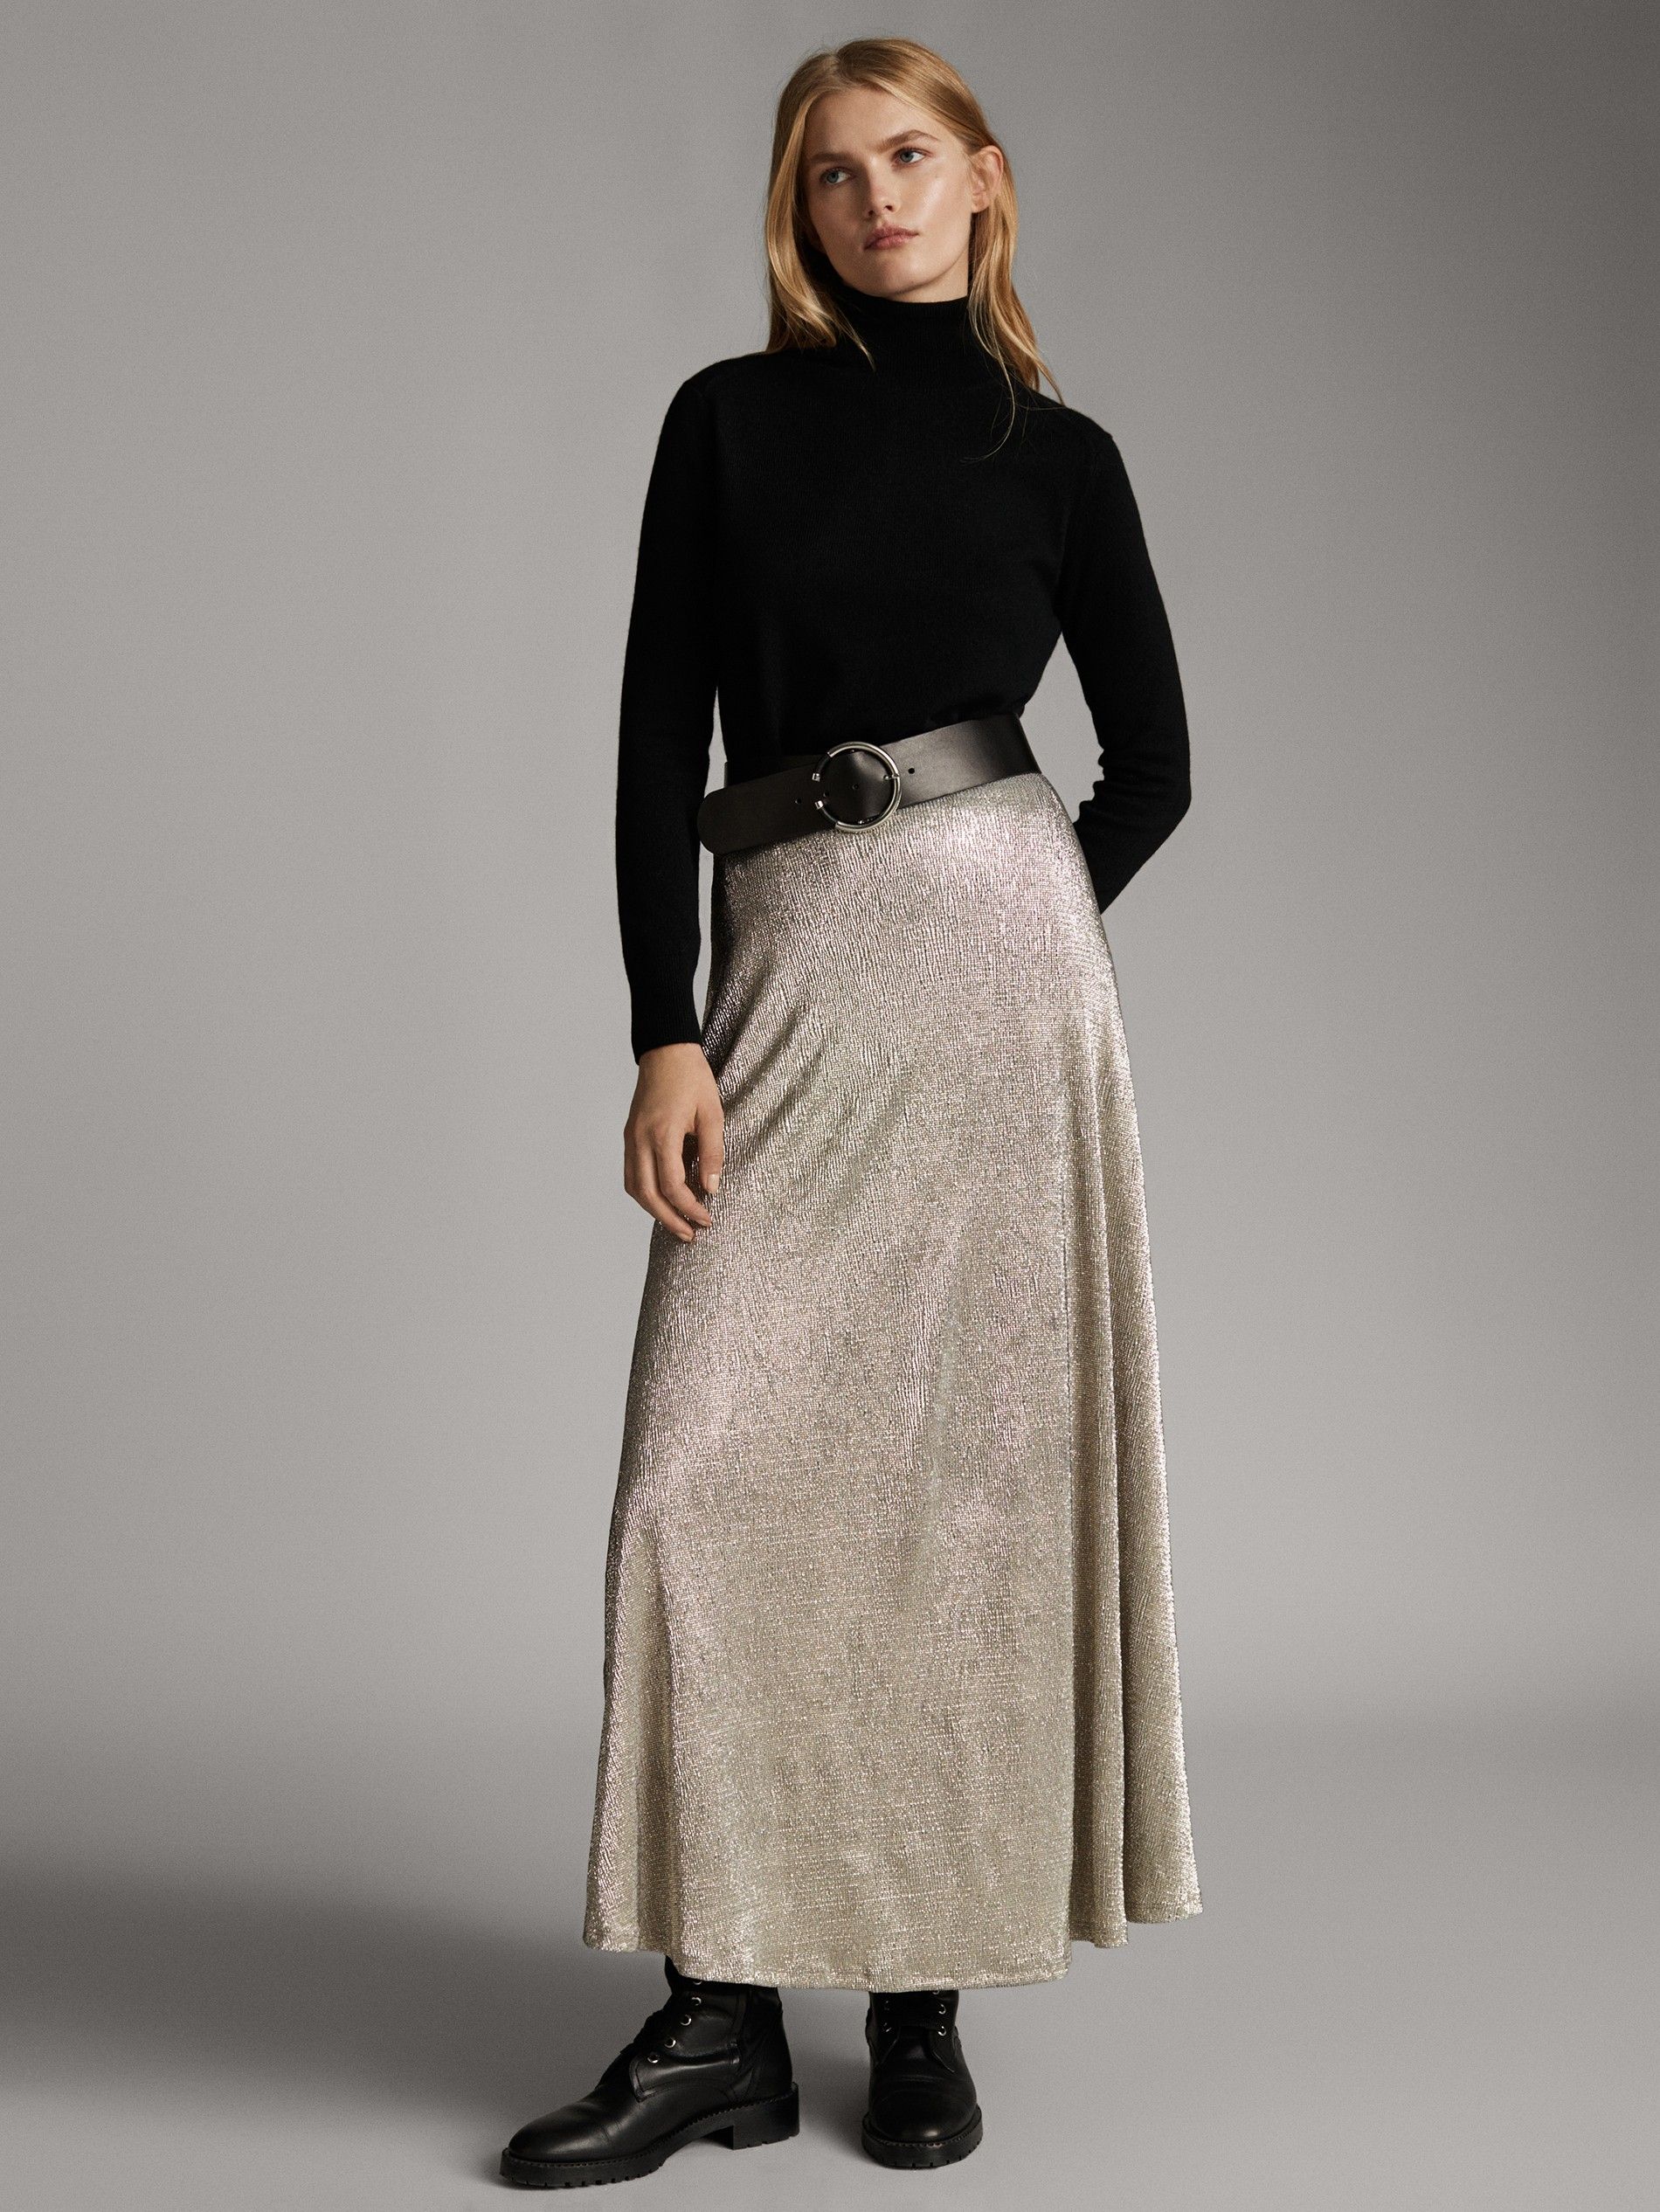 14 faldas largas de Zara, Massimo Dutti, Sfera y compañía que te pondrás  con todo